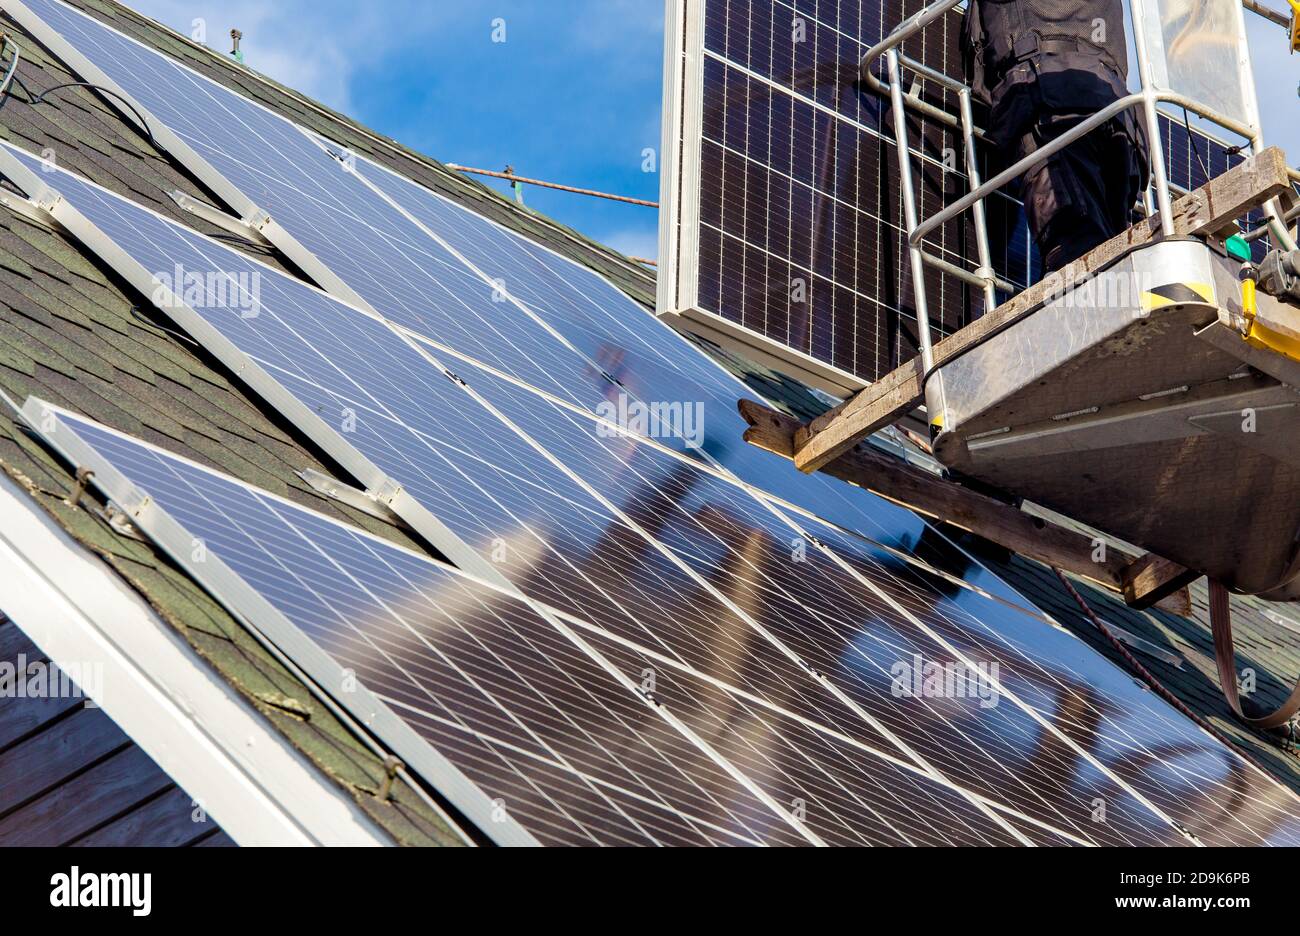 Les travailleurs qui installent des panneaux solaires sur le toit hexagonal de la maison privée se sont sentis le jour ensoleillé, ciel bleu. La vie réelle. Centrale électrique domestique. Banque D'Images